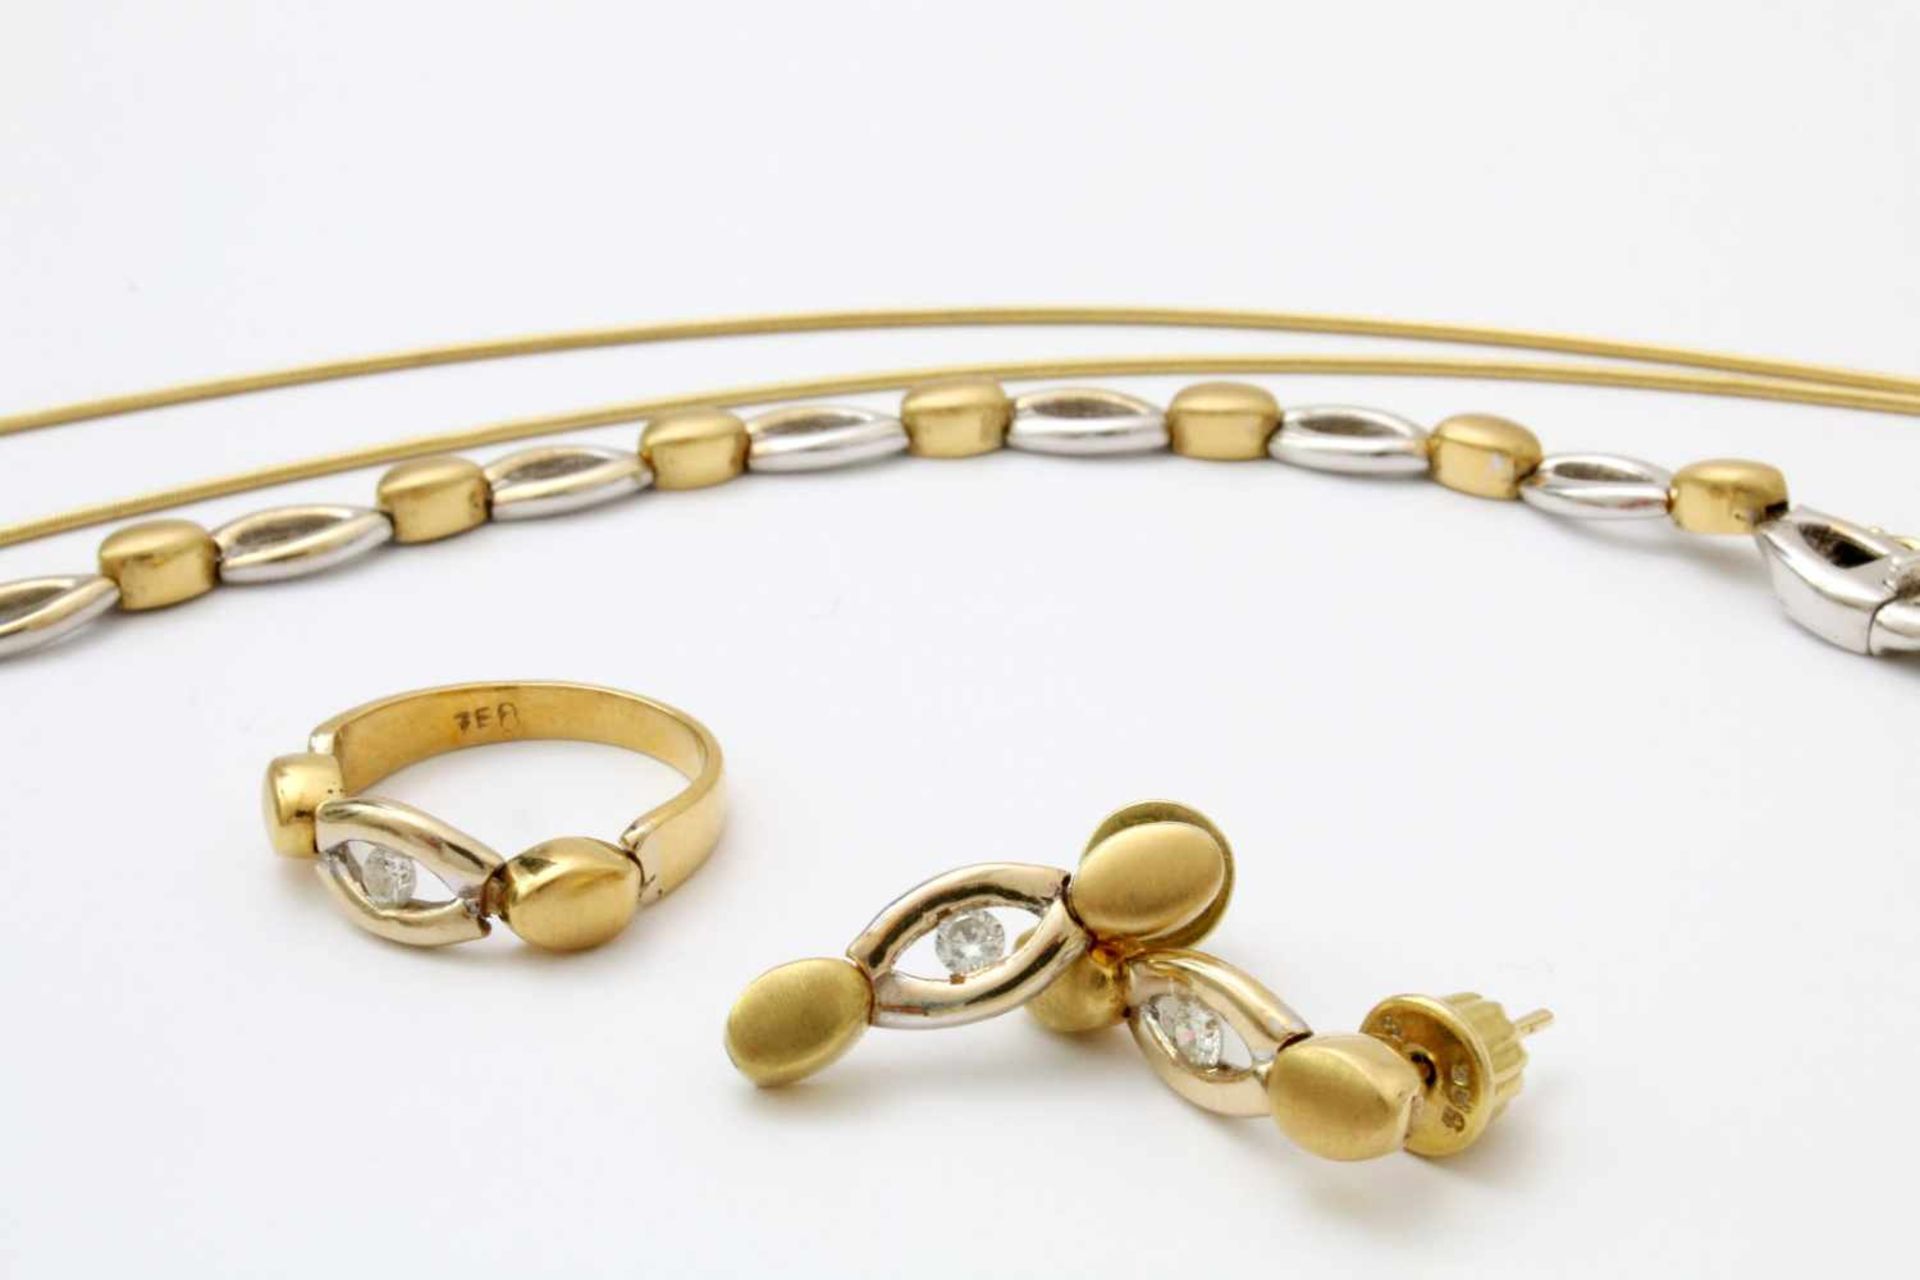 Gelbgold / Weißgold Schmuckset mit Brillanten - Collier, Halskette, Ohrringe, Ring GG / WG 750, - Image 3 of 4